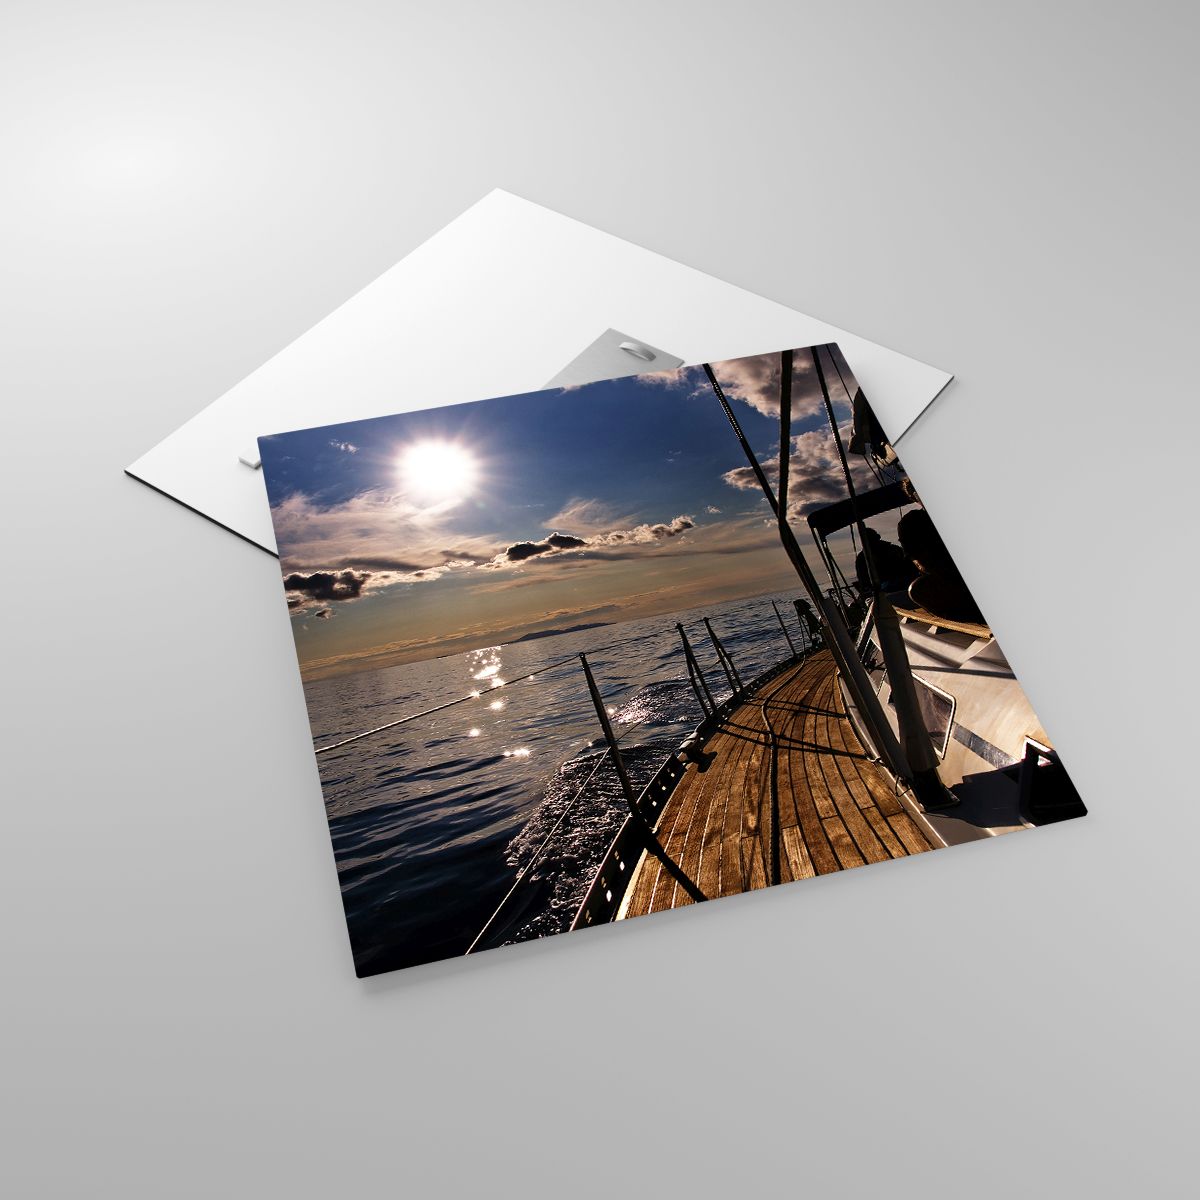 Glasbild Marine, Glasbild Yacht, Glasbild Meer, Glasbild Der Sonnenuntergang, Glasbild Personen